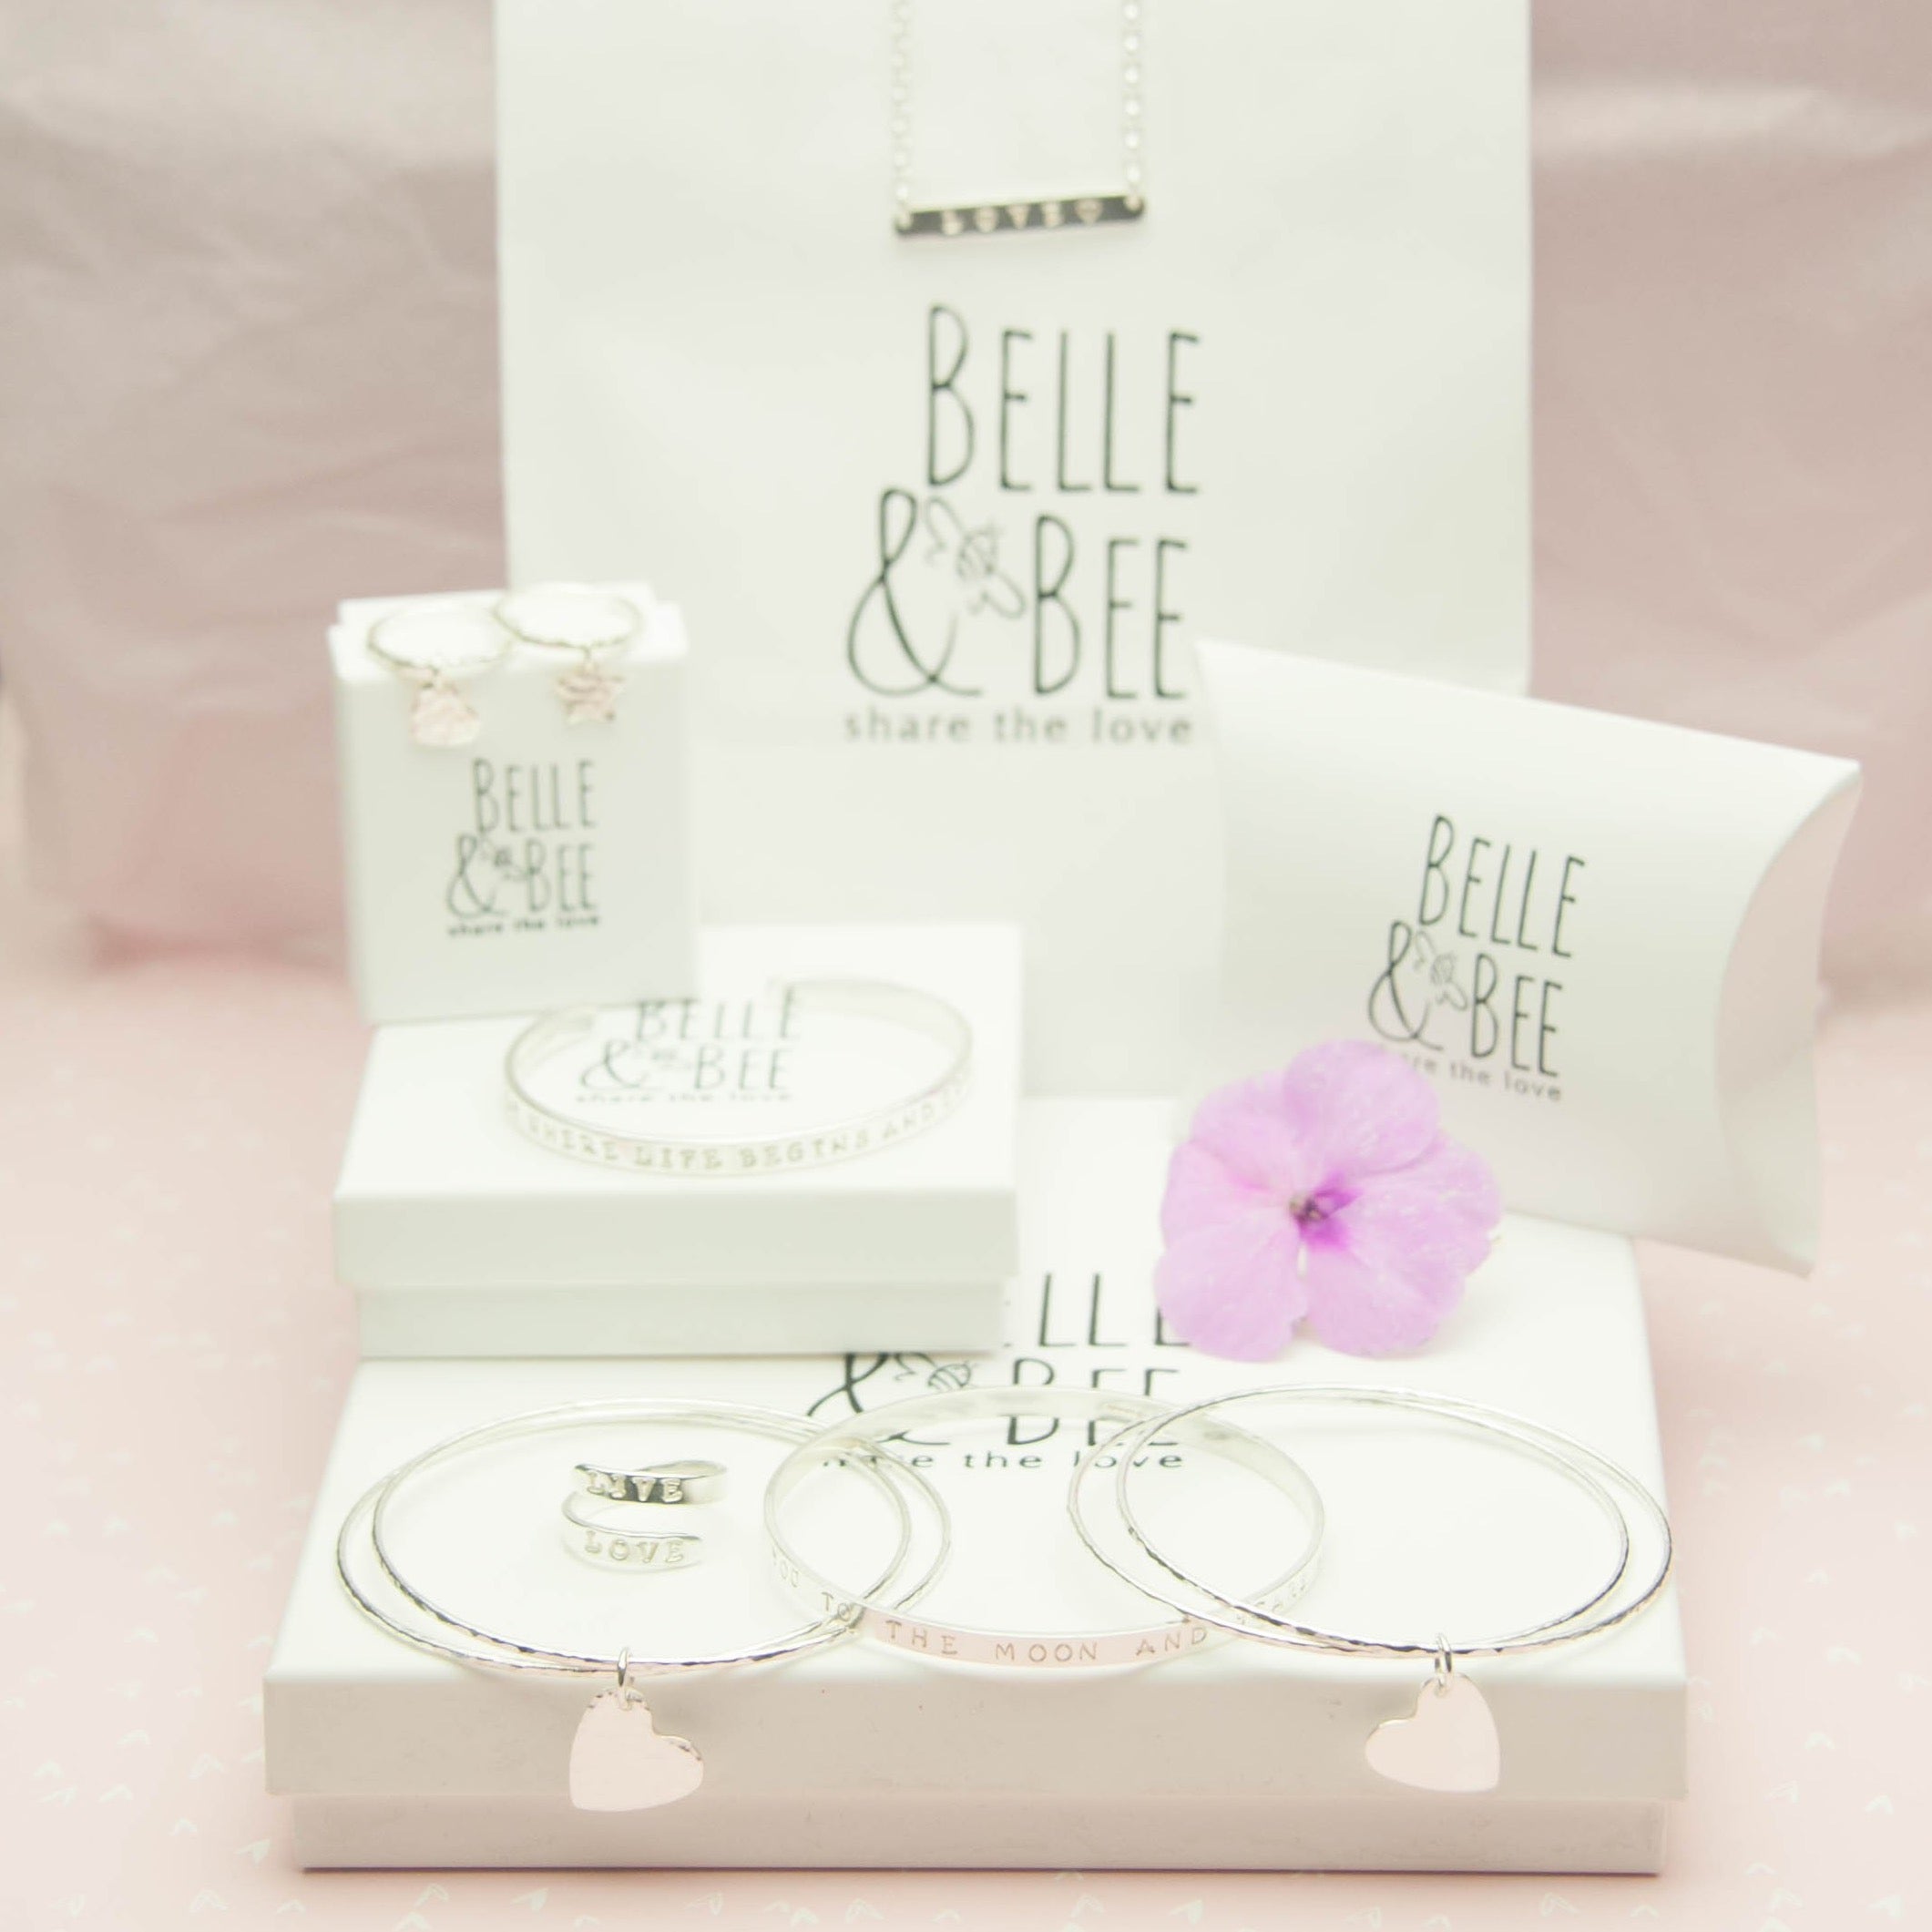 Belle & Bee packaging